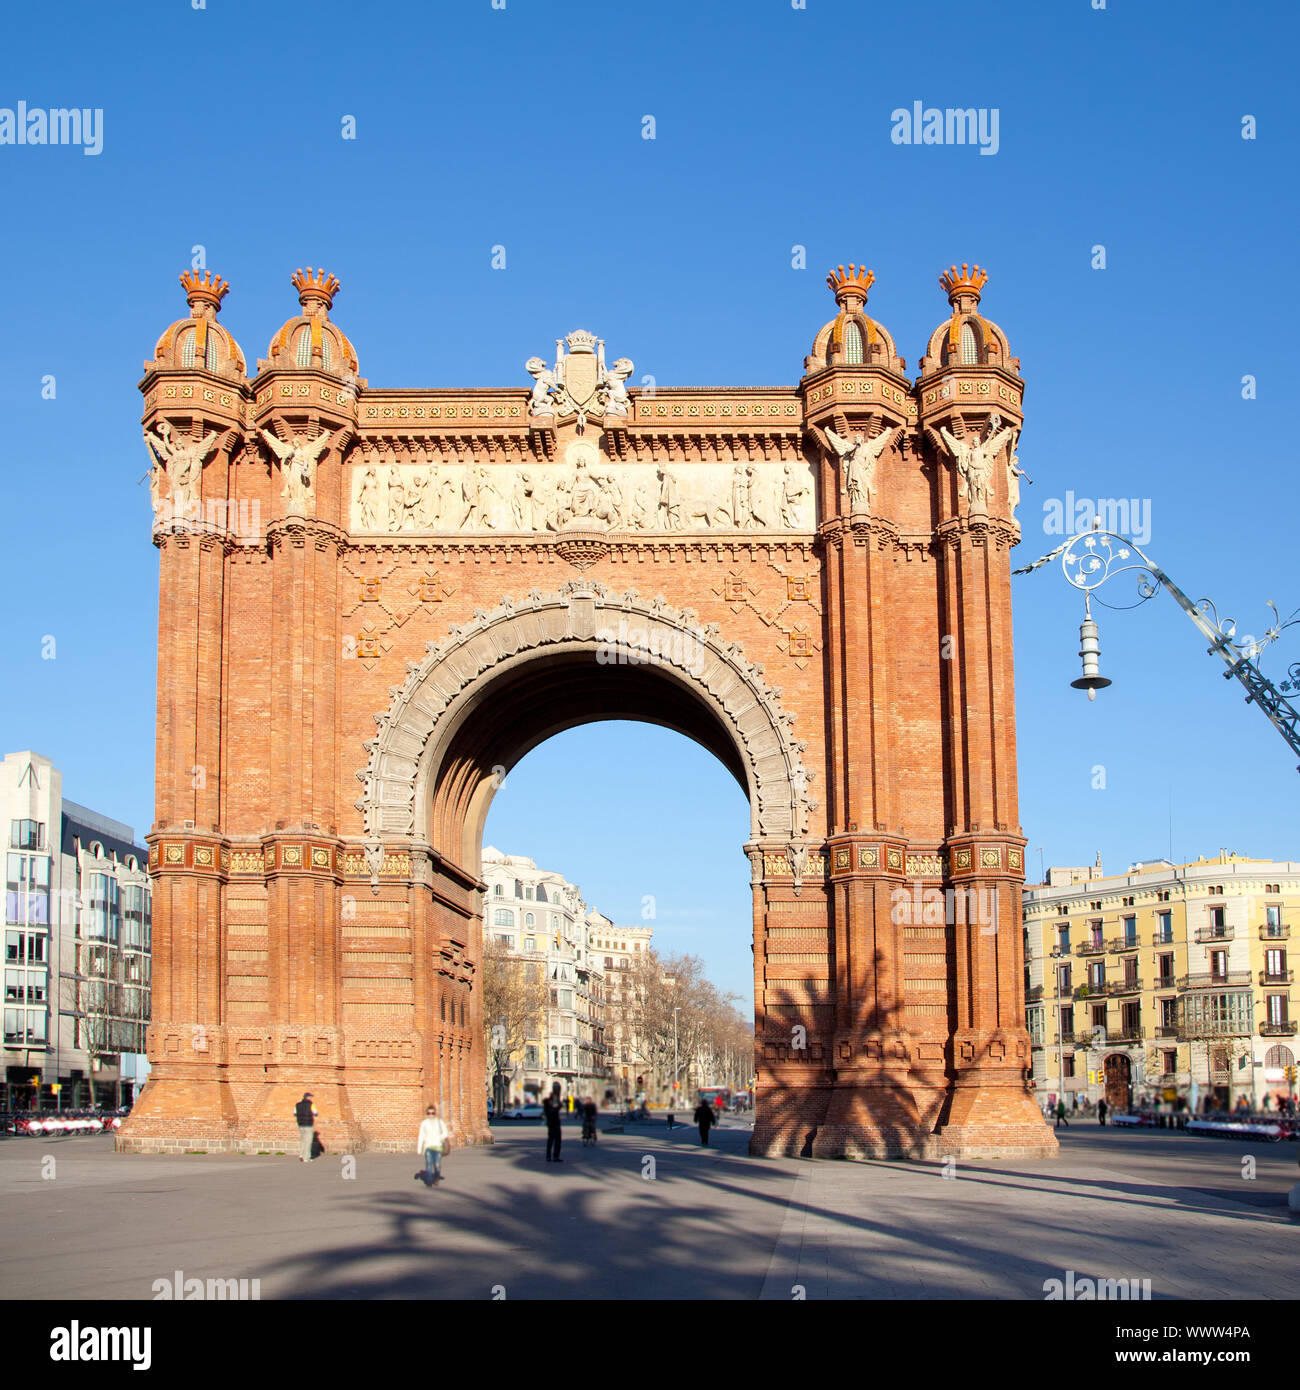 Arco del Triunfo Barcelona Triumph Arch Arc de Triomf Stock Photo